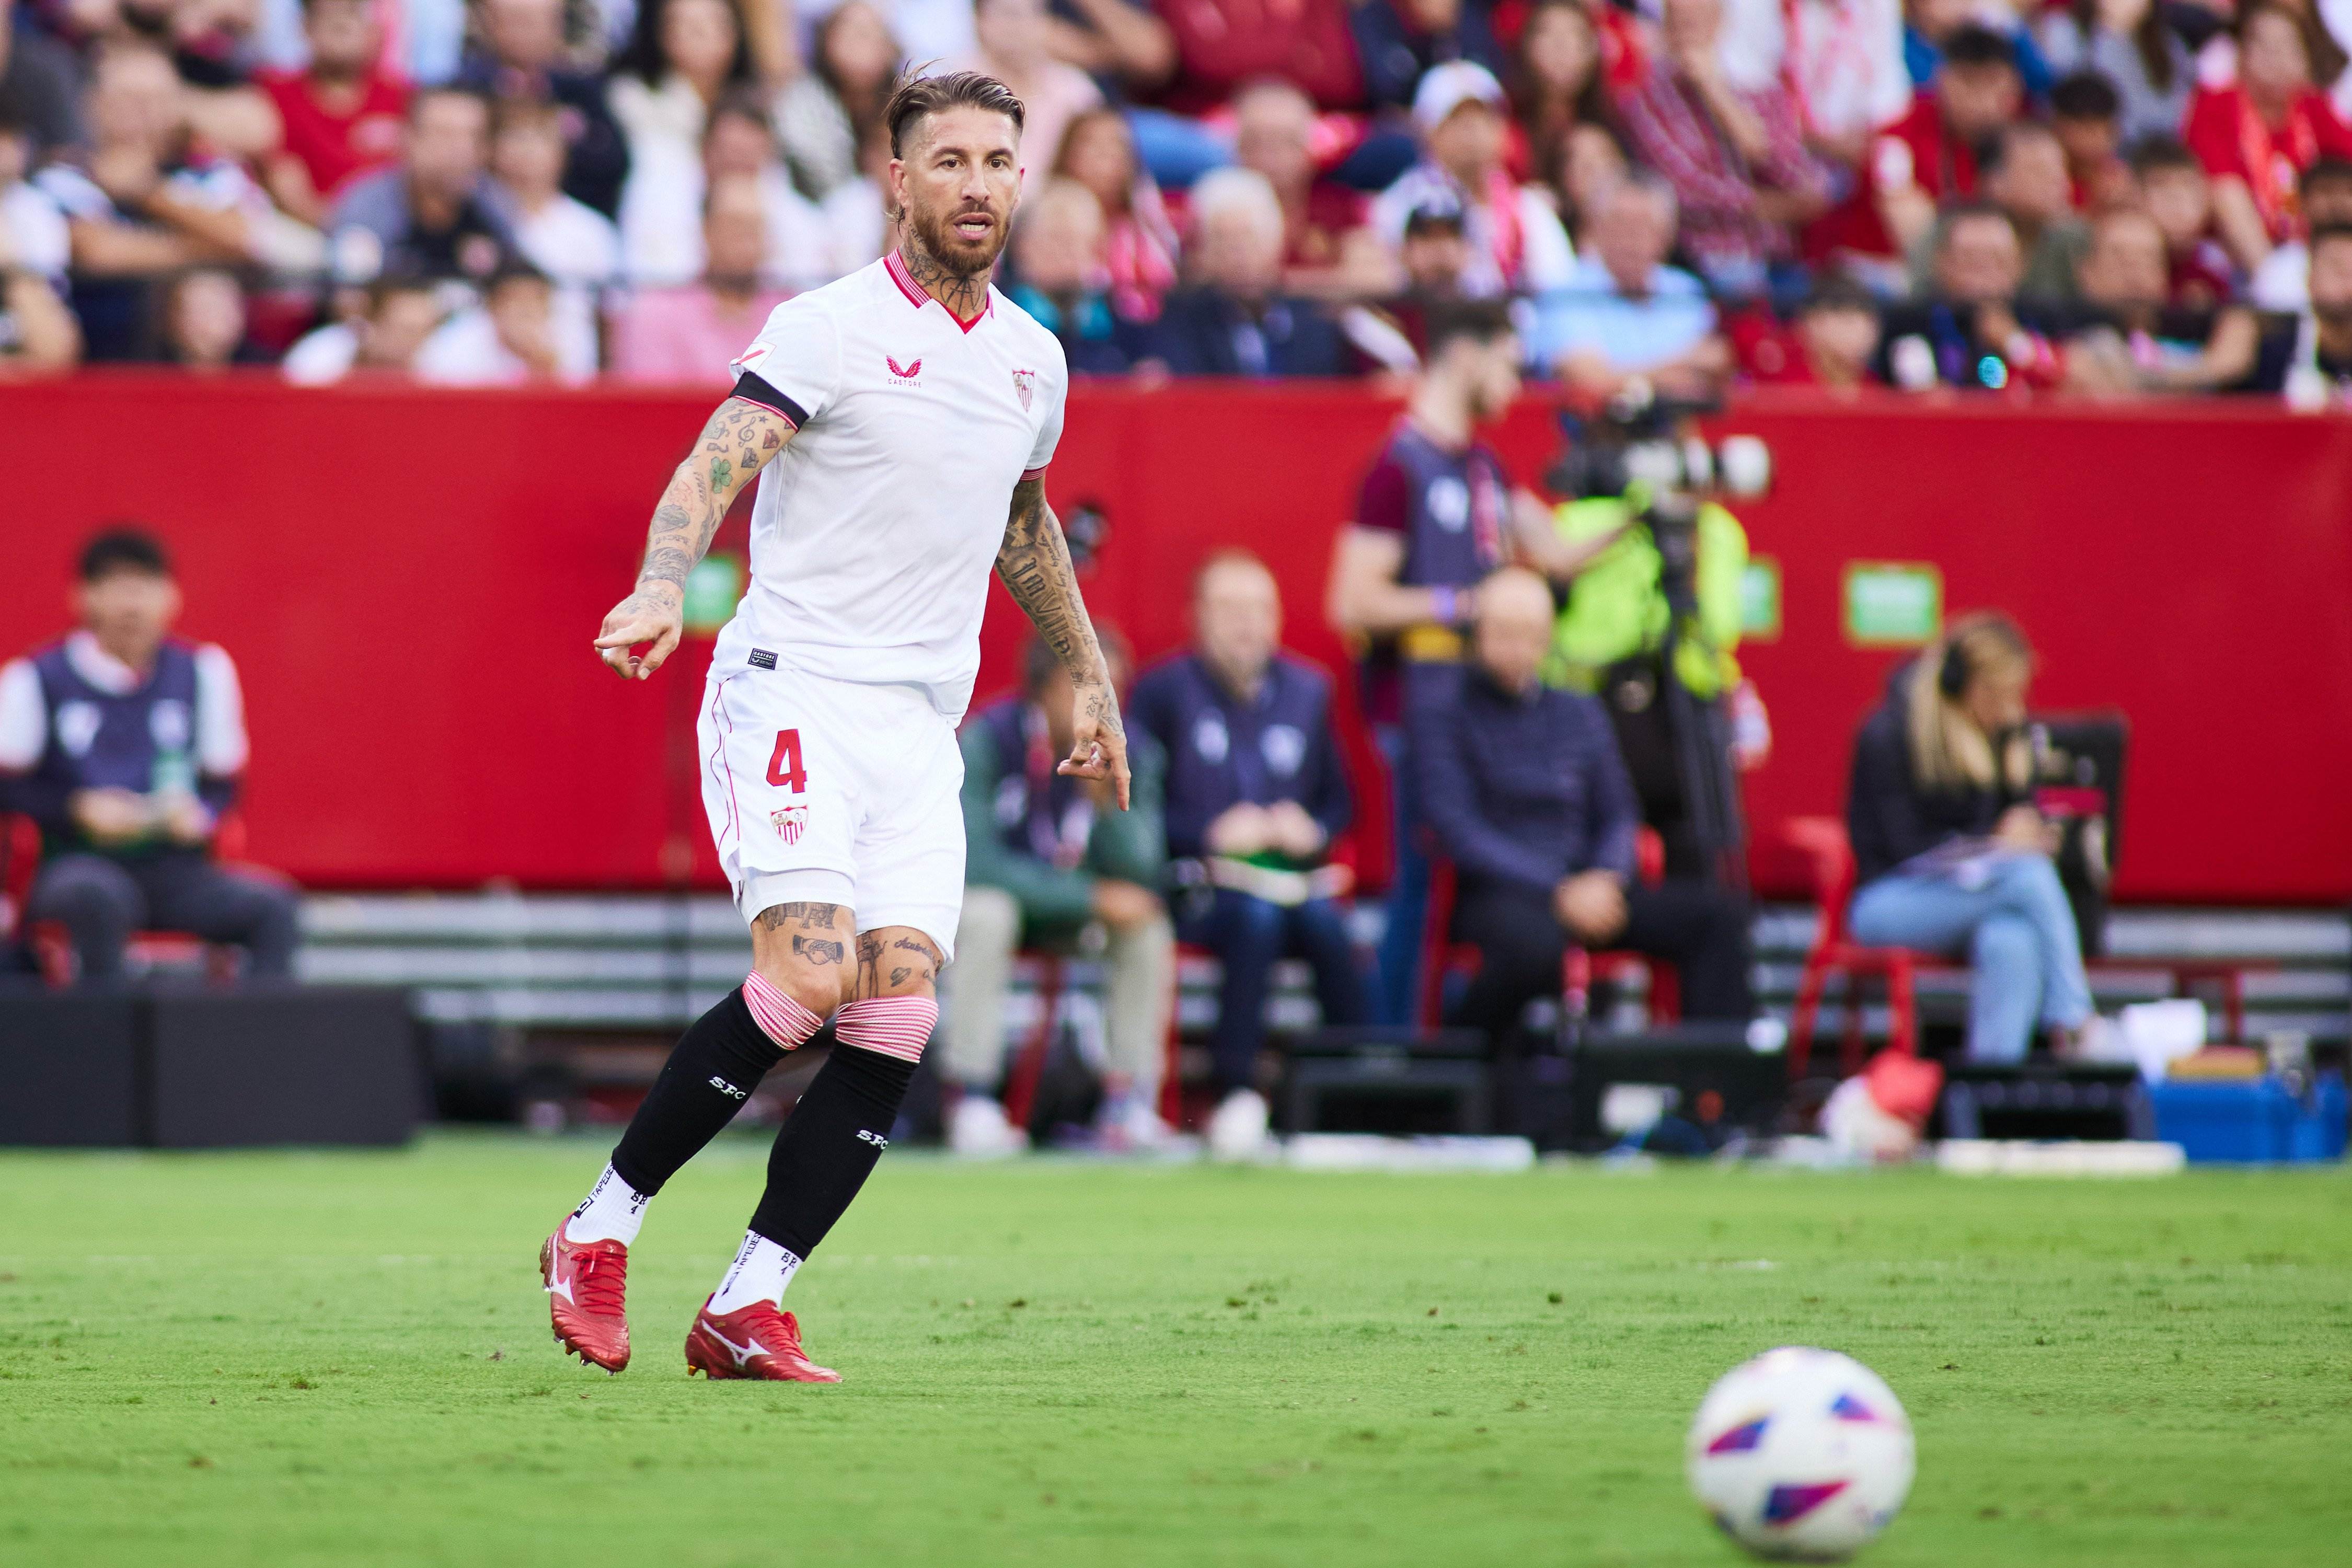 Asalto al ‘niño de oro’ del Sevilla, Florentino Pérez repite la operación Sergio Ramos